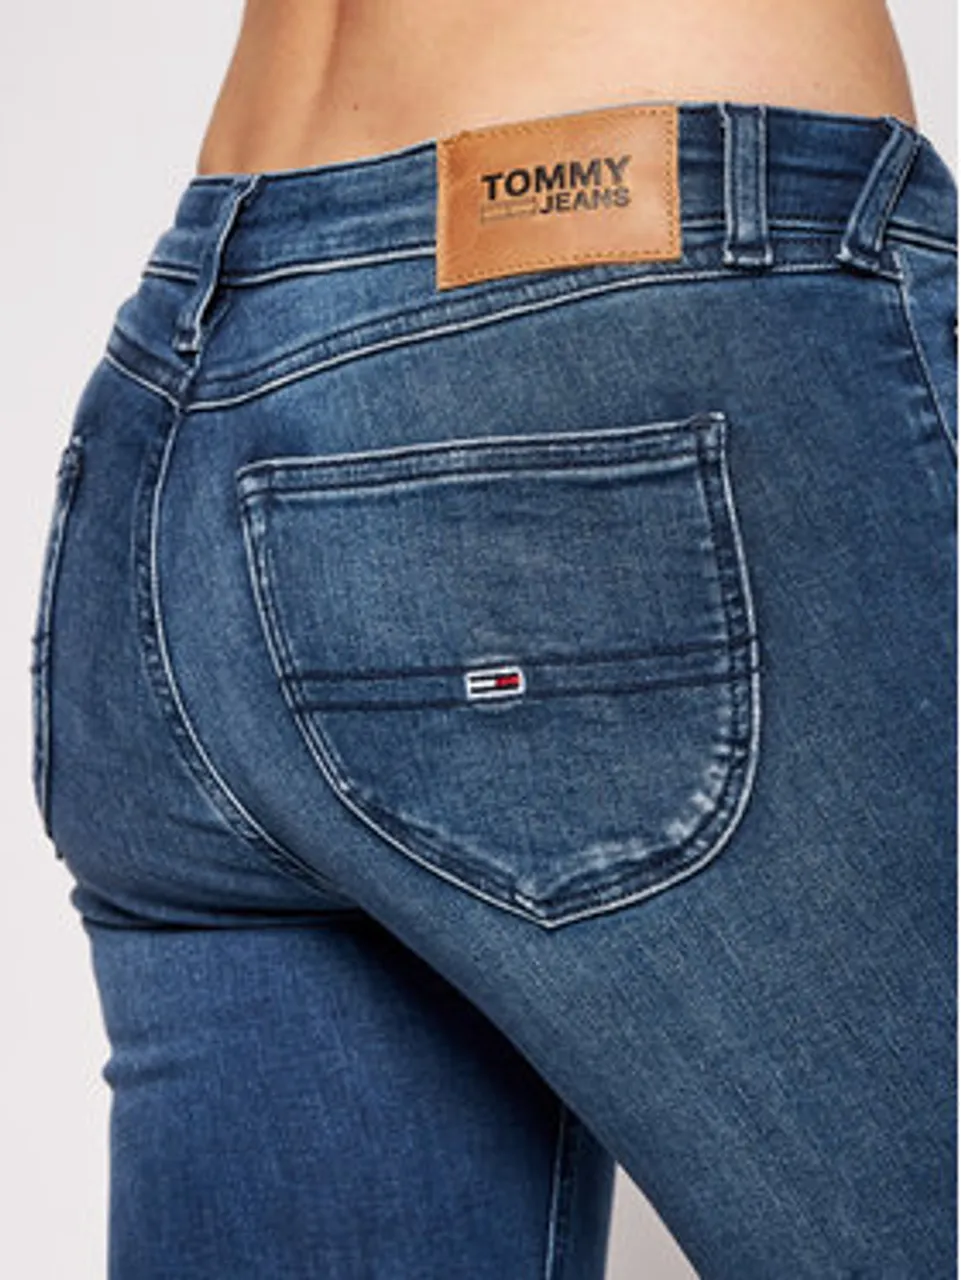 Tommy Hilfiger Tommy Jeans Damen Jeans Sophie Stretch 492590-0001-02532 -  Preise vergleichen